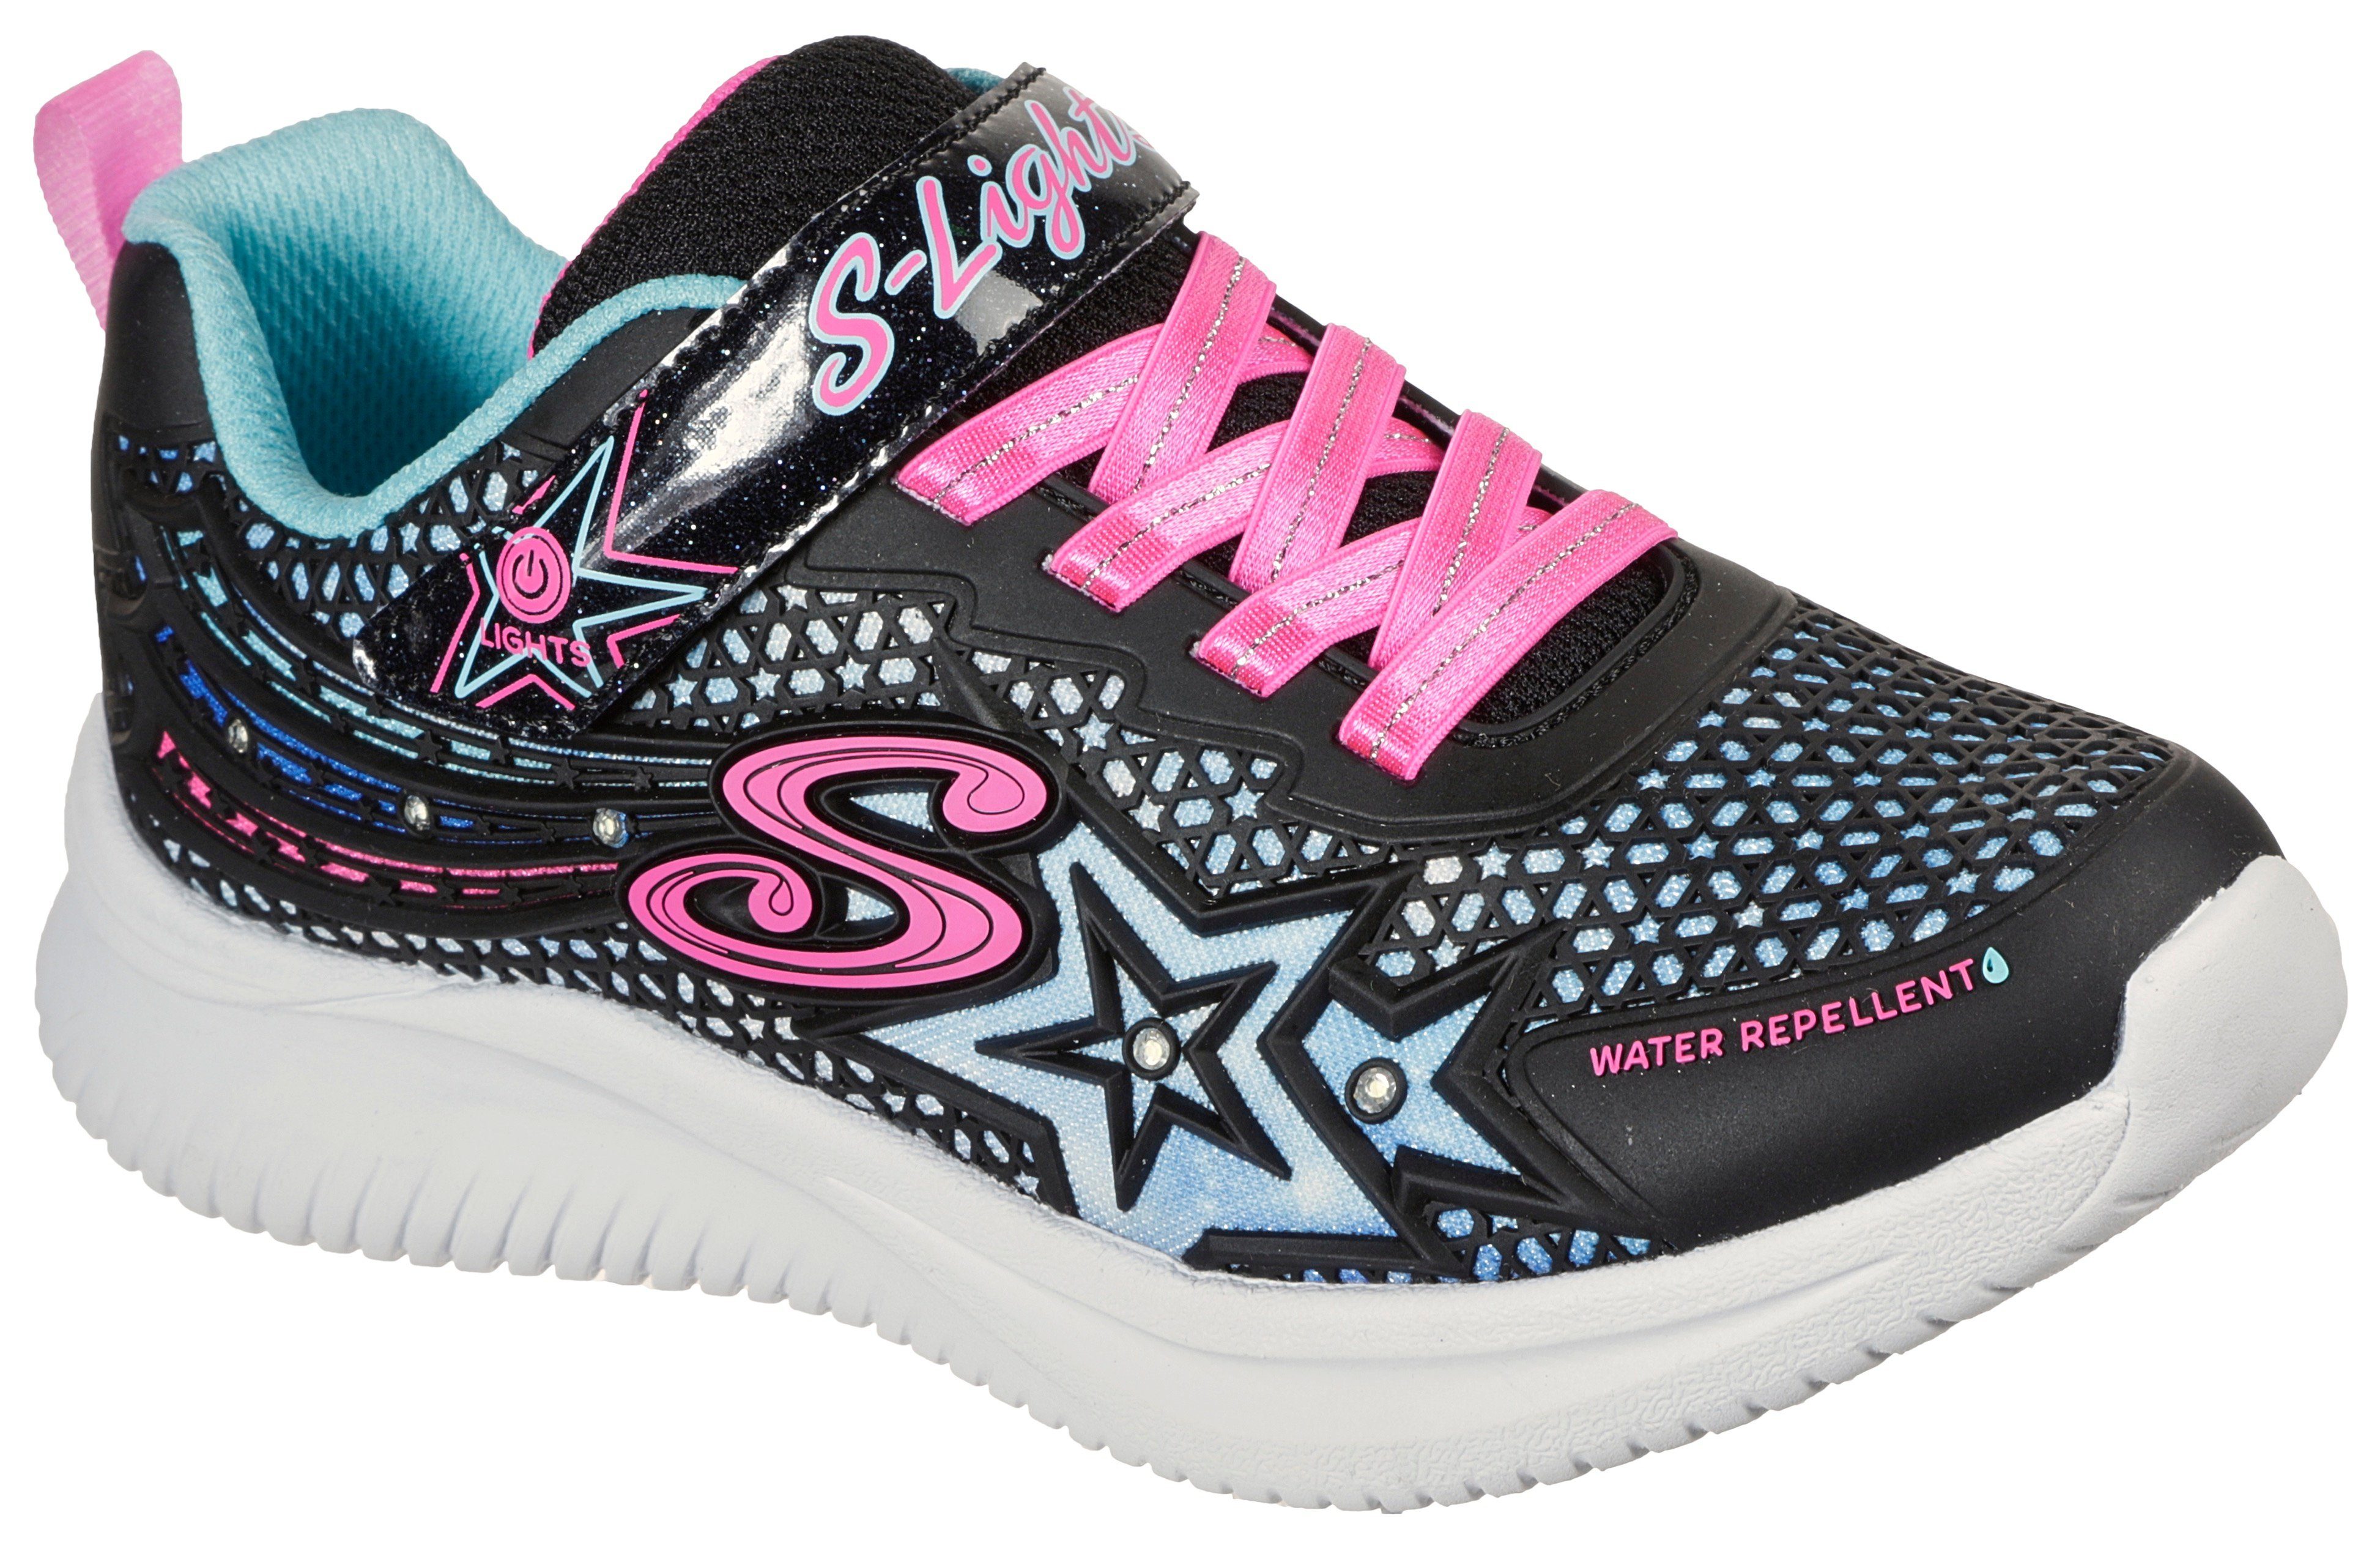 Skechers Kids »JUMPSTERS WISHFUL STAR« Sneaker leuchtet bei jedem Schritt  online kaufen | OTTO